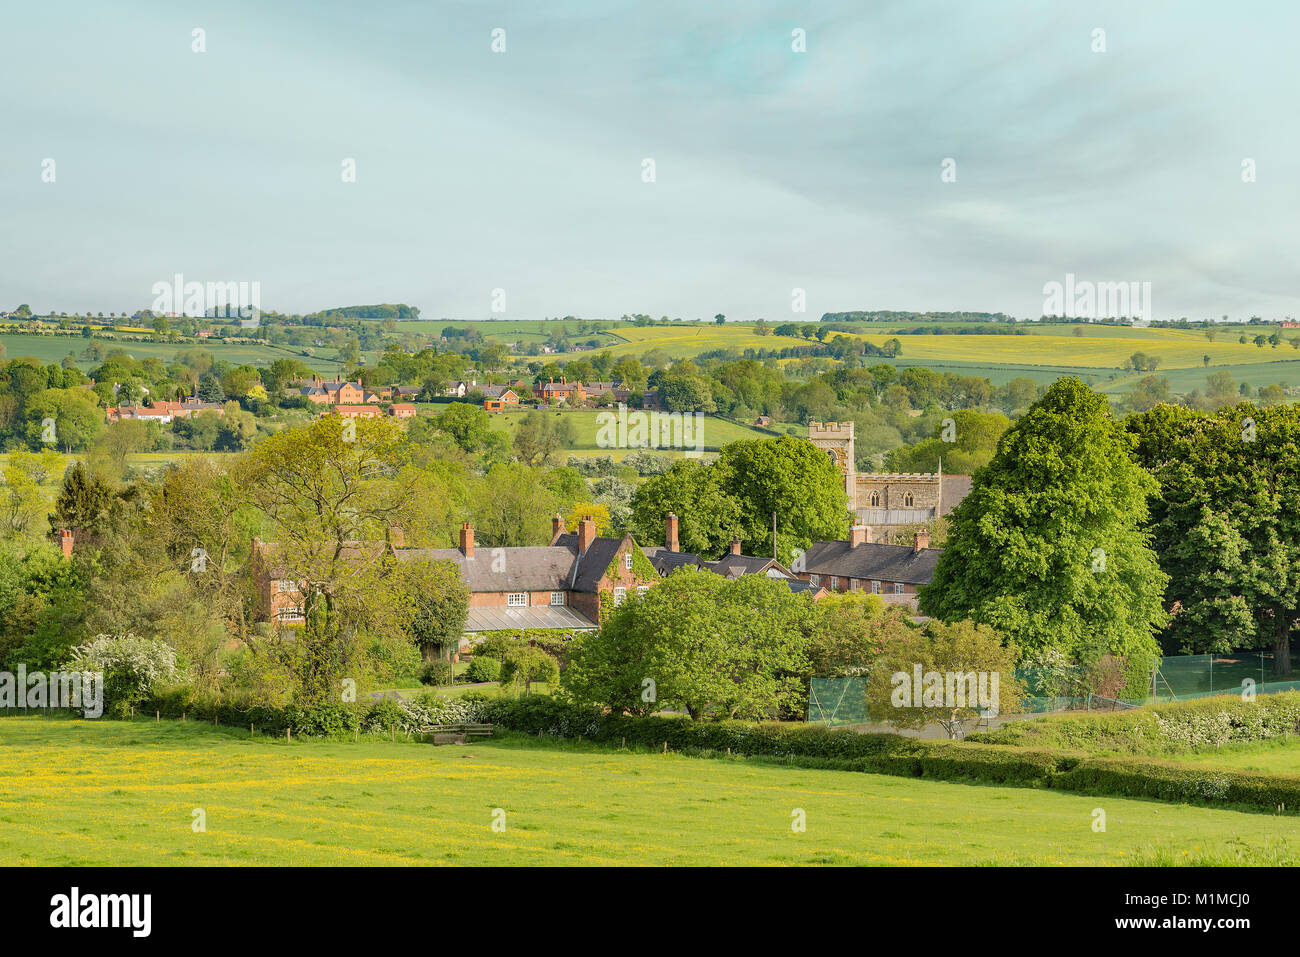 La imagen muestra una sección del pequeño y tranquilo pueblo de Rotherby, Leicestershire, Inglaterra, Reino Unido. Foto de stock